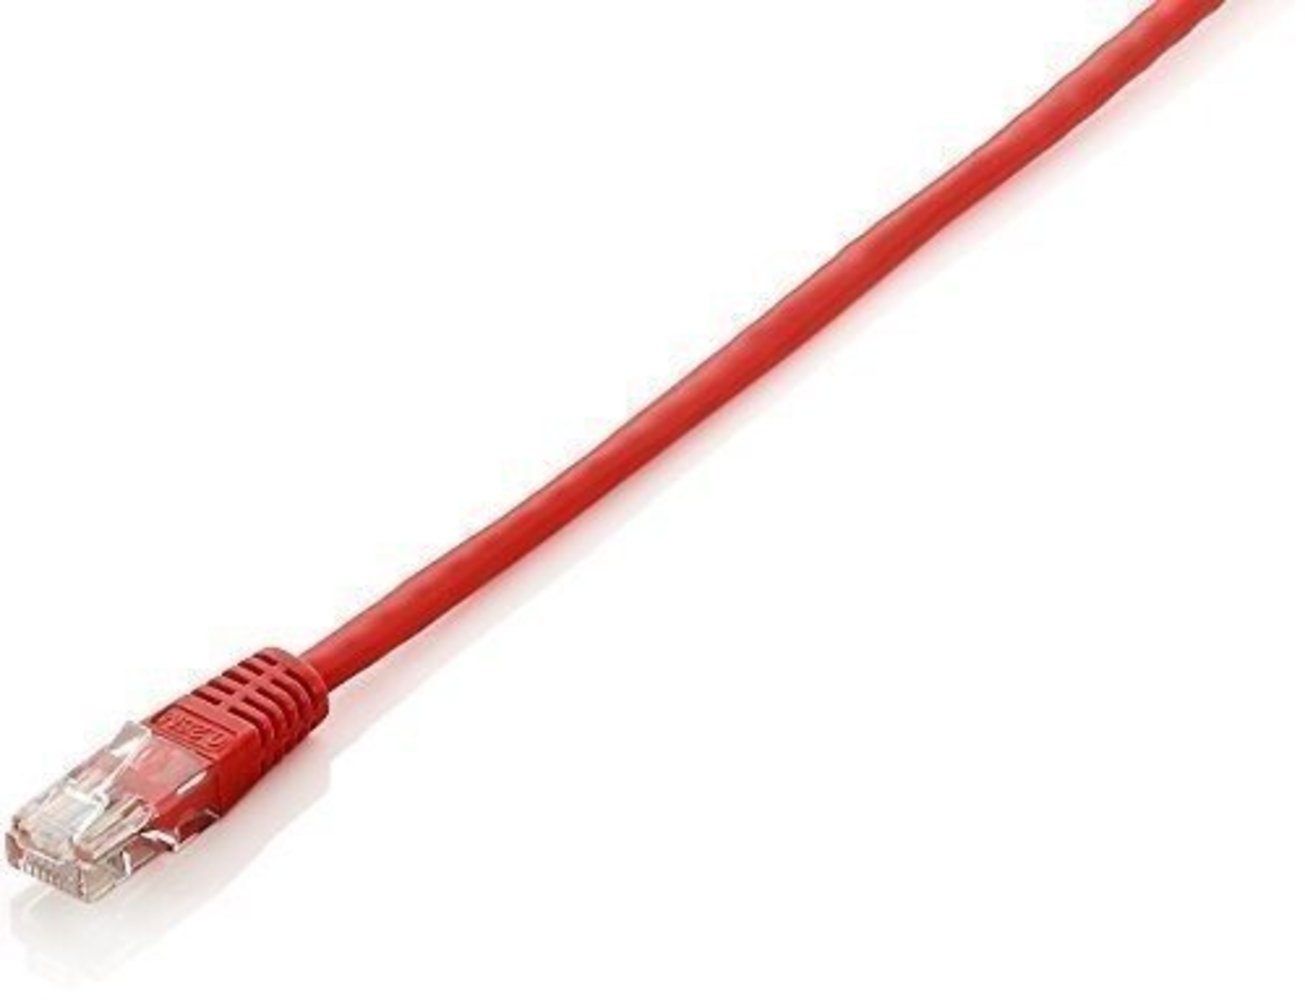 Equip CCA Patchkabel U/UTP 2xRJ45 Cat6 rot 5.0m - Hochwertiges, langlebiges und zuverlässiges Netzwerkkabel für schnelle Übertragungsgeschwindigkeiten